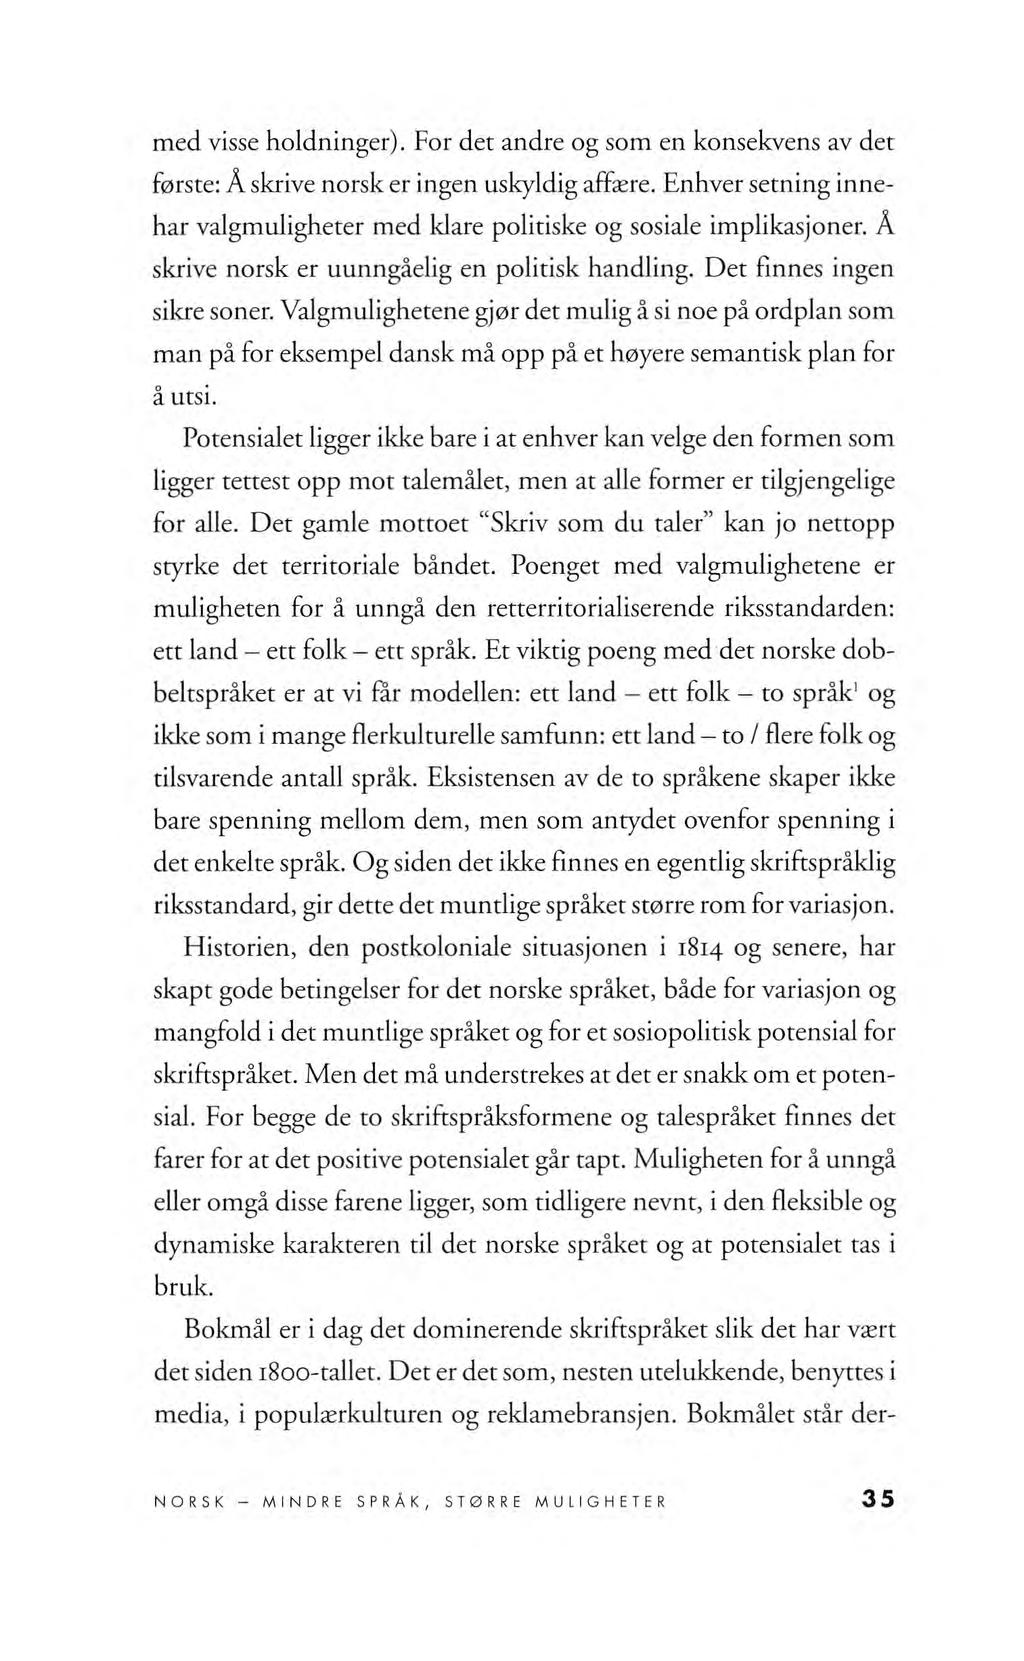 med visse holdninger). For det andre og som en konsekvens av det første: Å skrive norsk er ingen uskyldig affære. Enhver setning innehar valgmuligheter med klare politiske og sosiale implikasjoner.